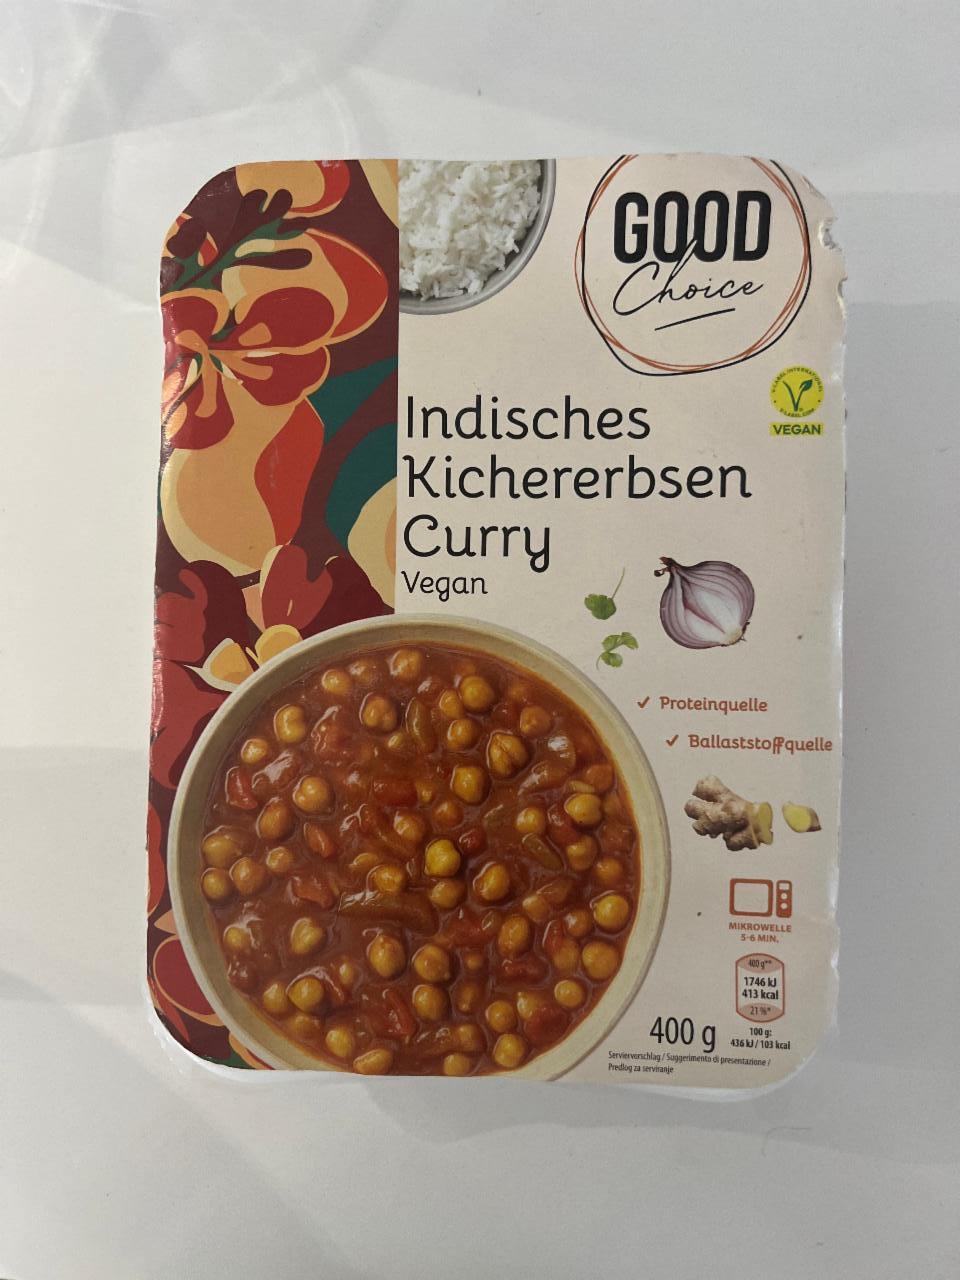 Fotografie - Indisches kichererbsen curry Good choice